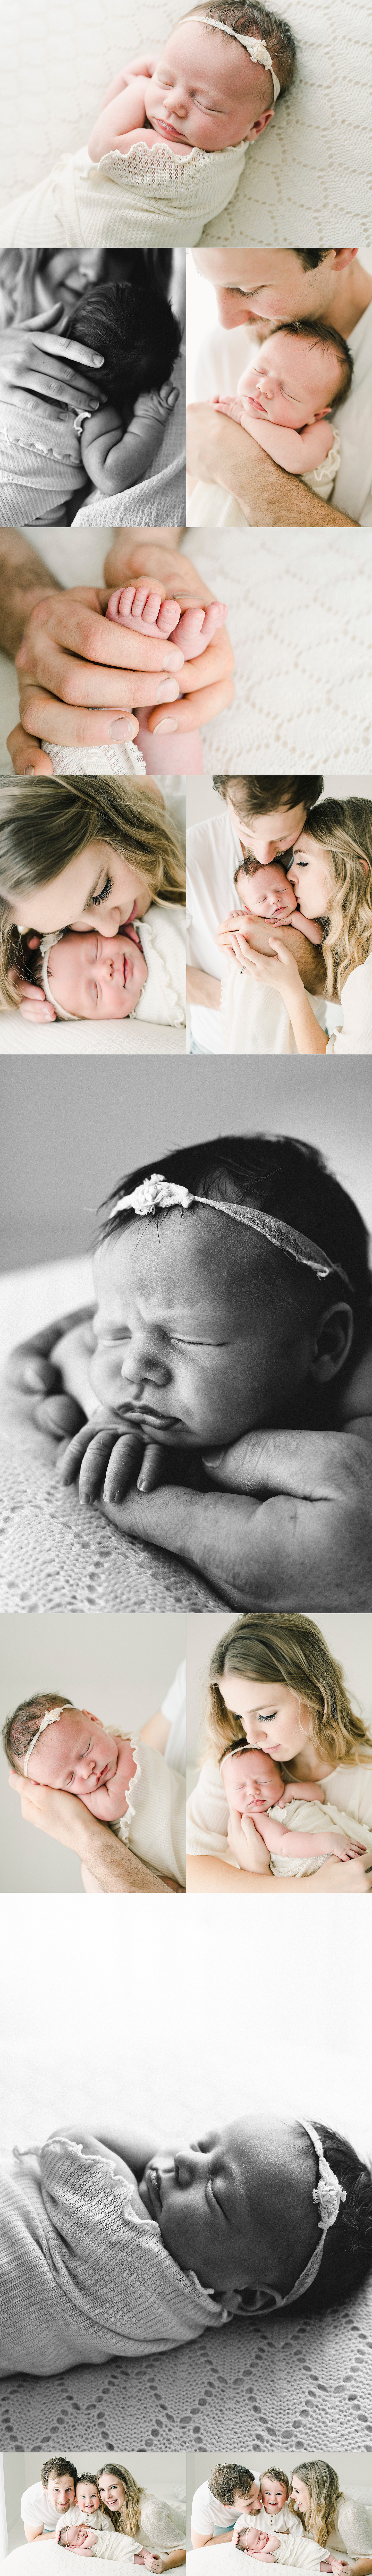 burlington newborn baby photographer